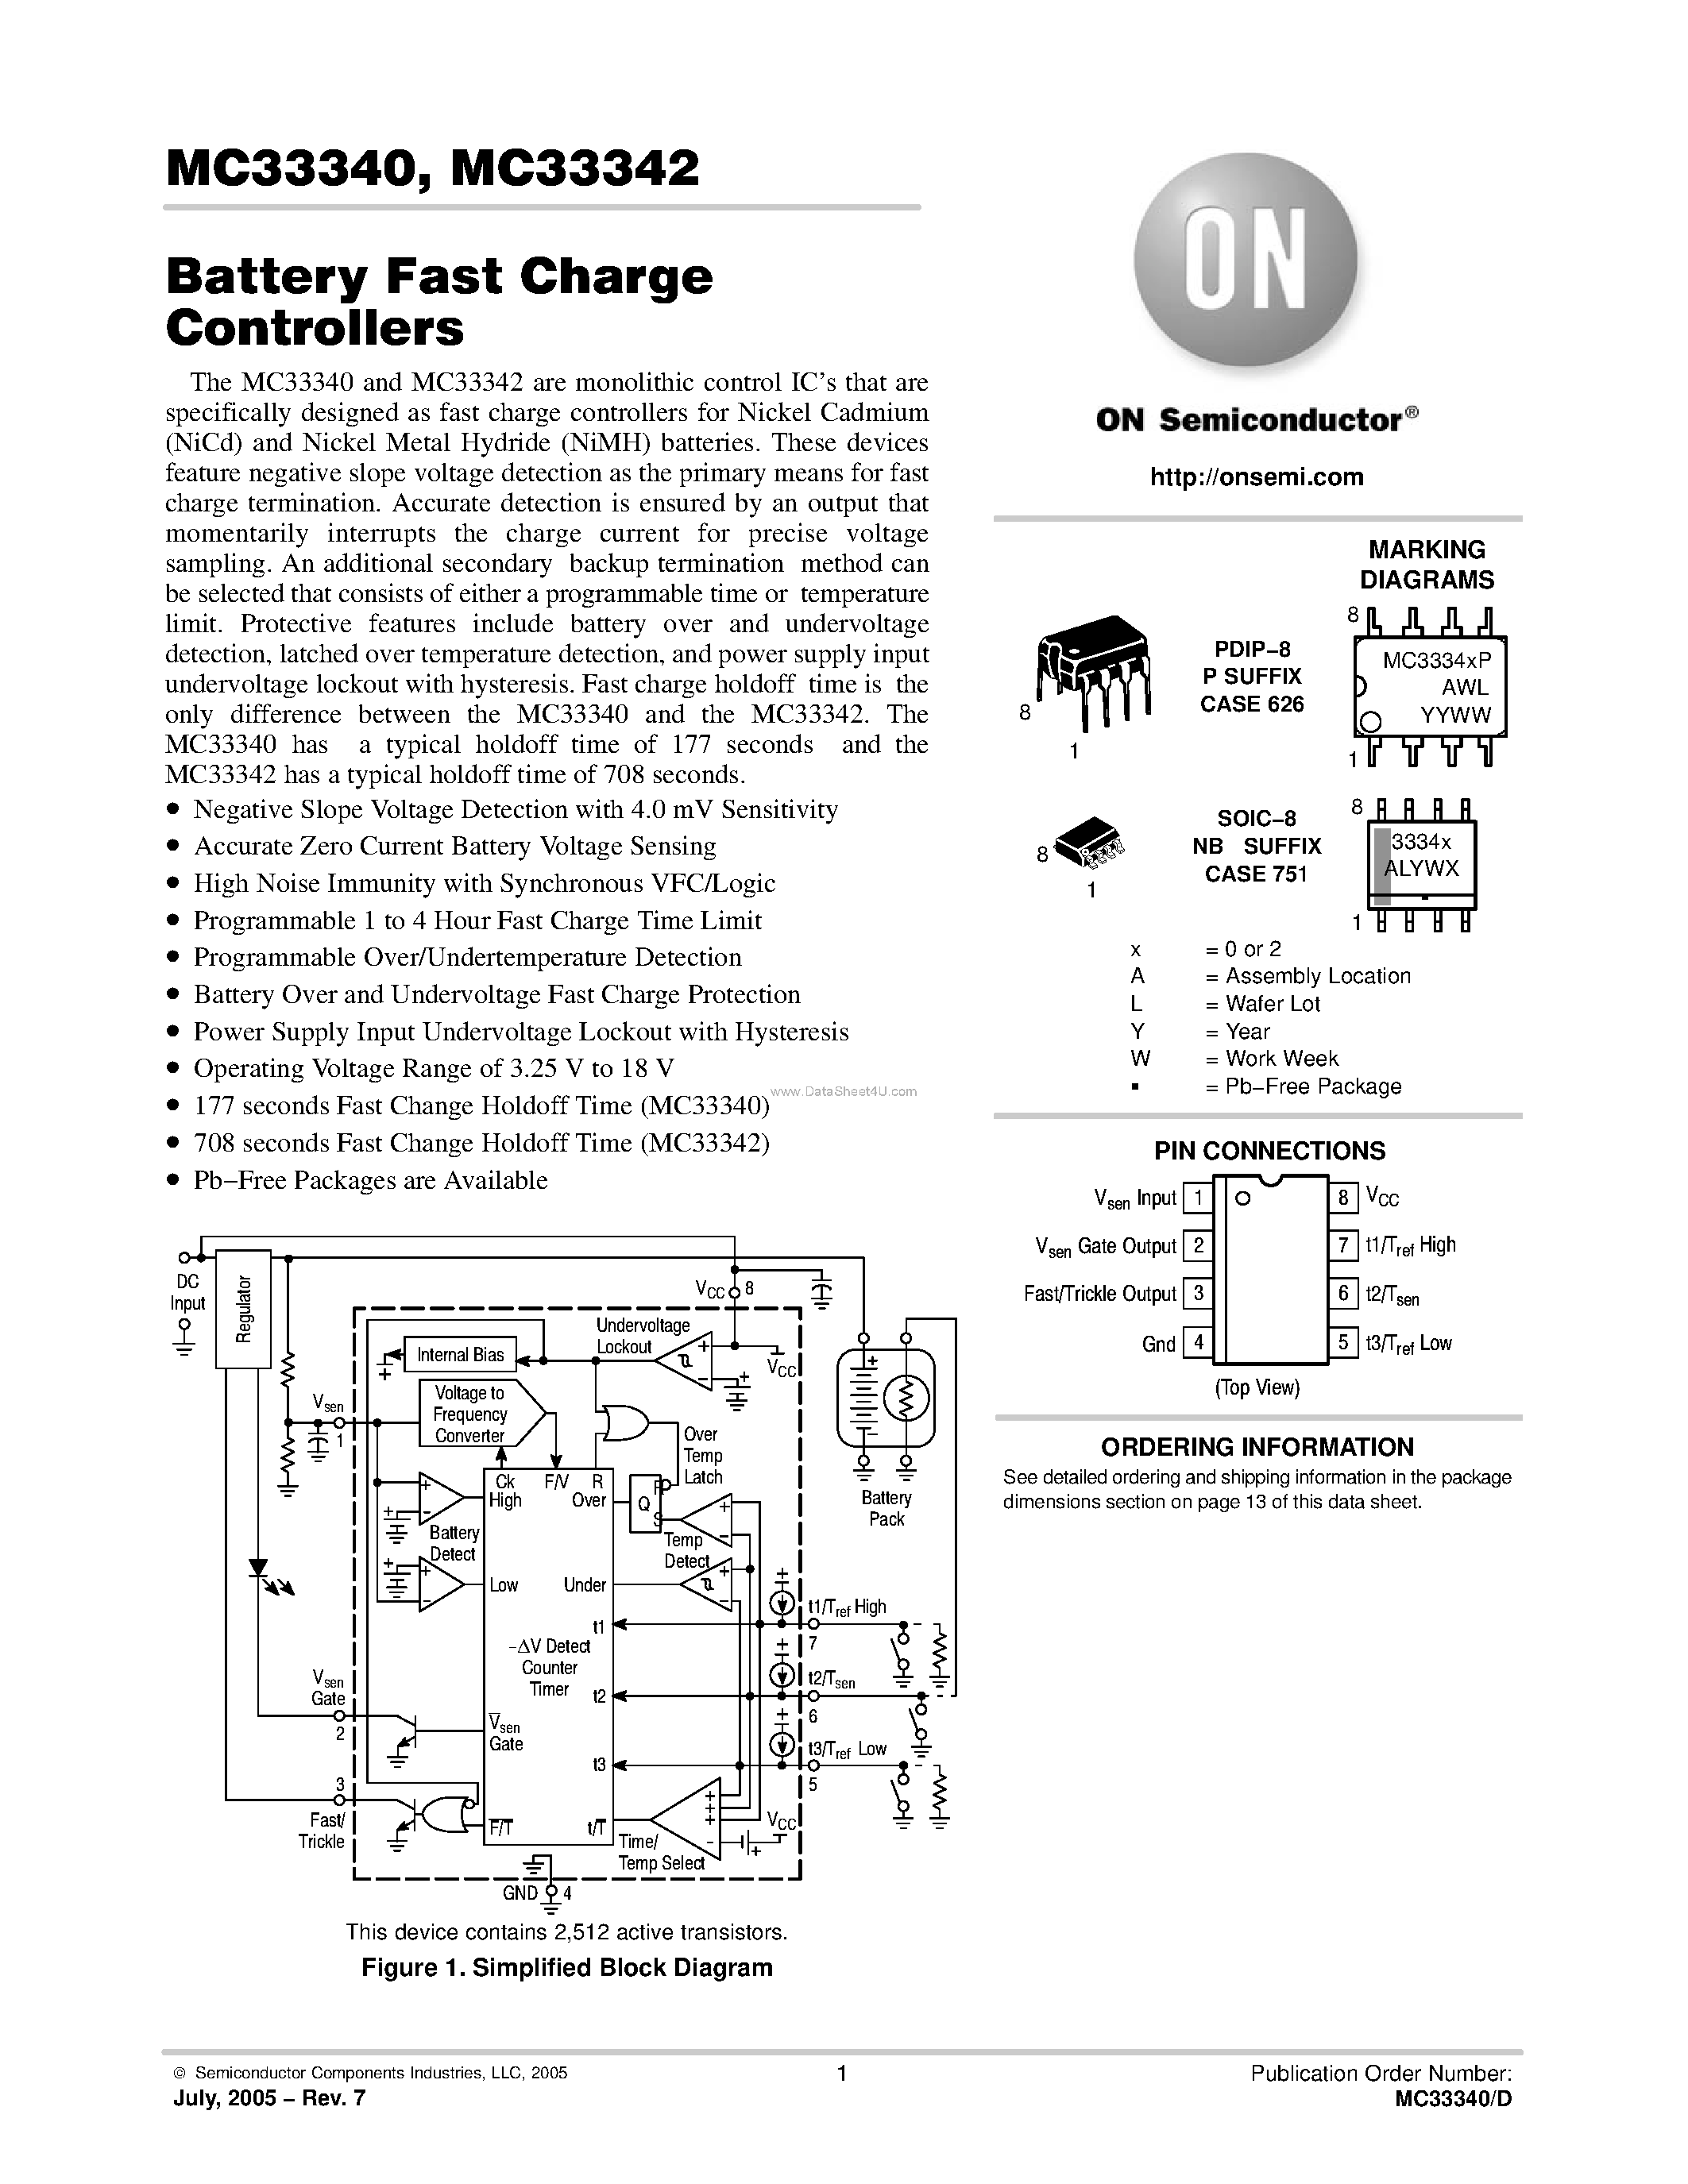 Даташит MC33340 - (MC33340 / MC33342) Battery Fast Charge Controllers страница 1